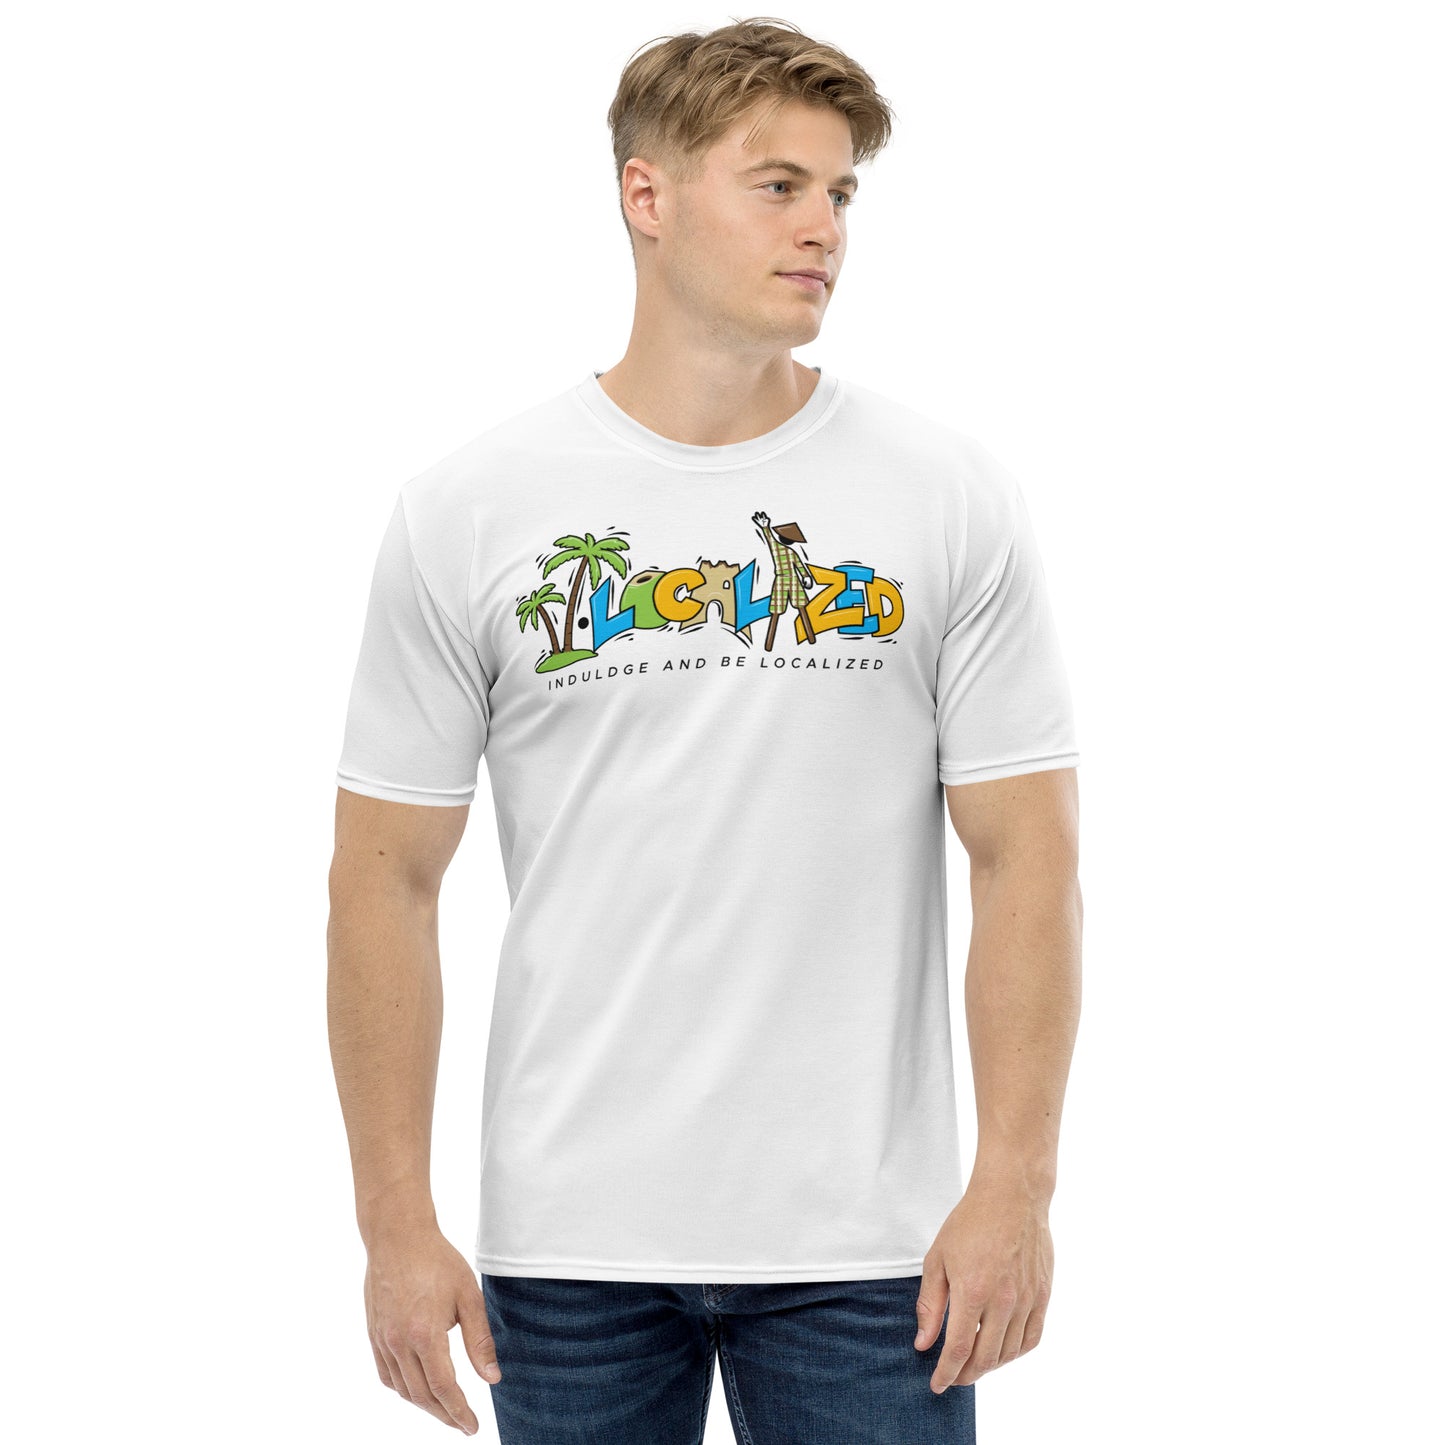 White V.Localized (Regular) Men’s Dry-Fit T-Shirt